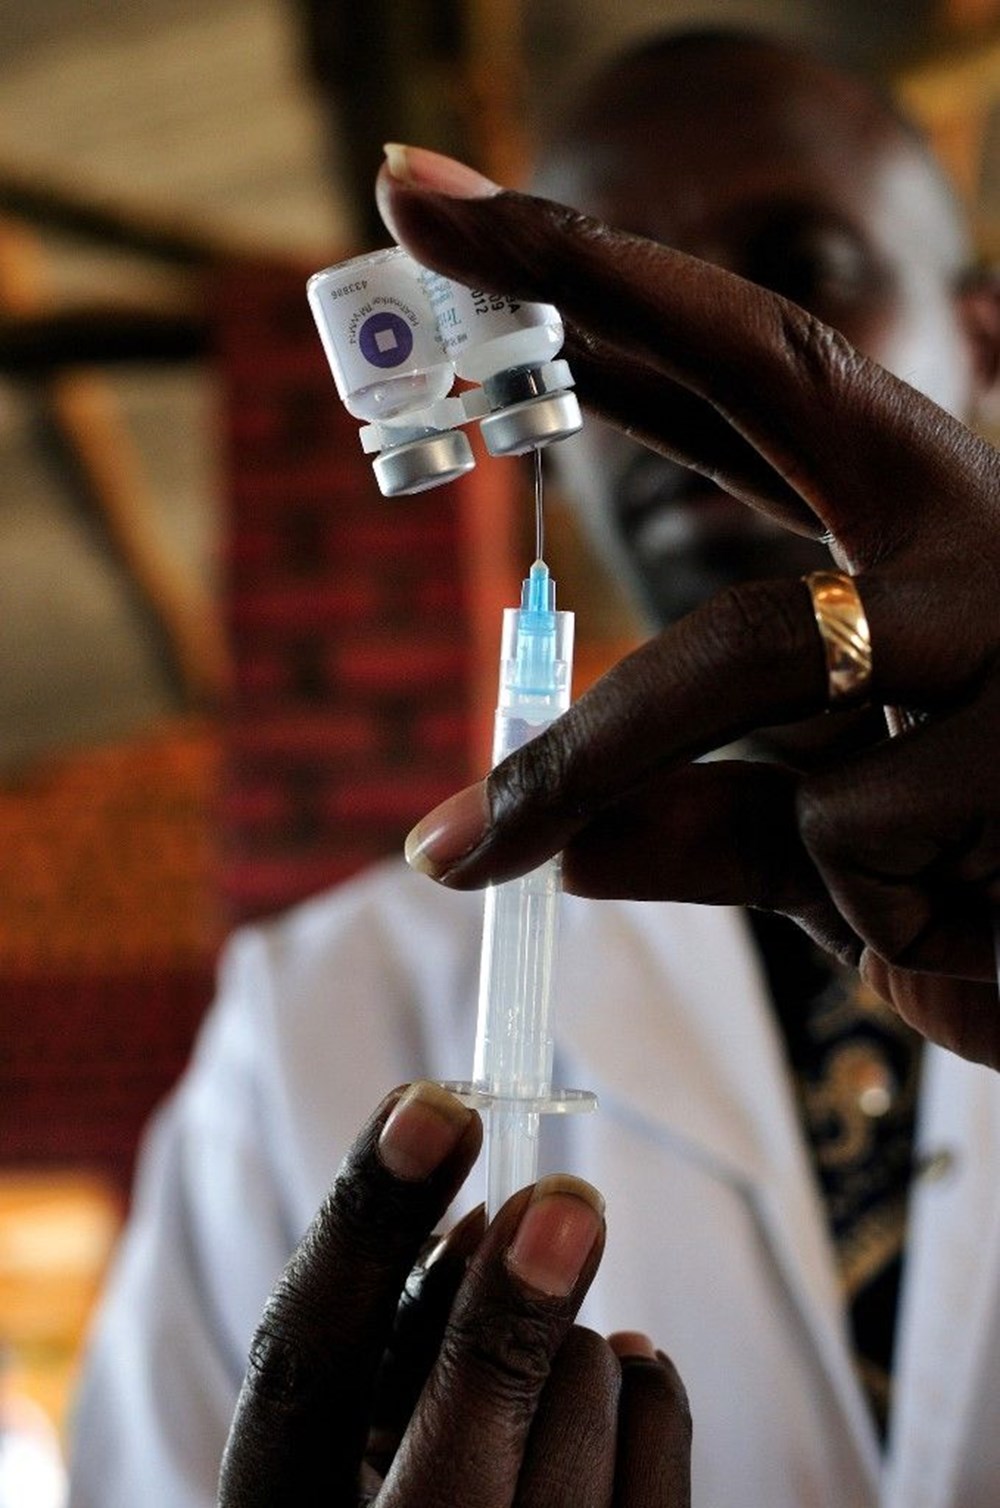 DSÖ’den sıtma
uyarısı: 2019’da 229 milyon kişi hastalandı, 409 bin kişi öldü - 5